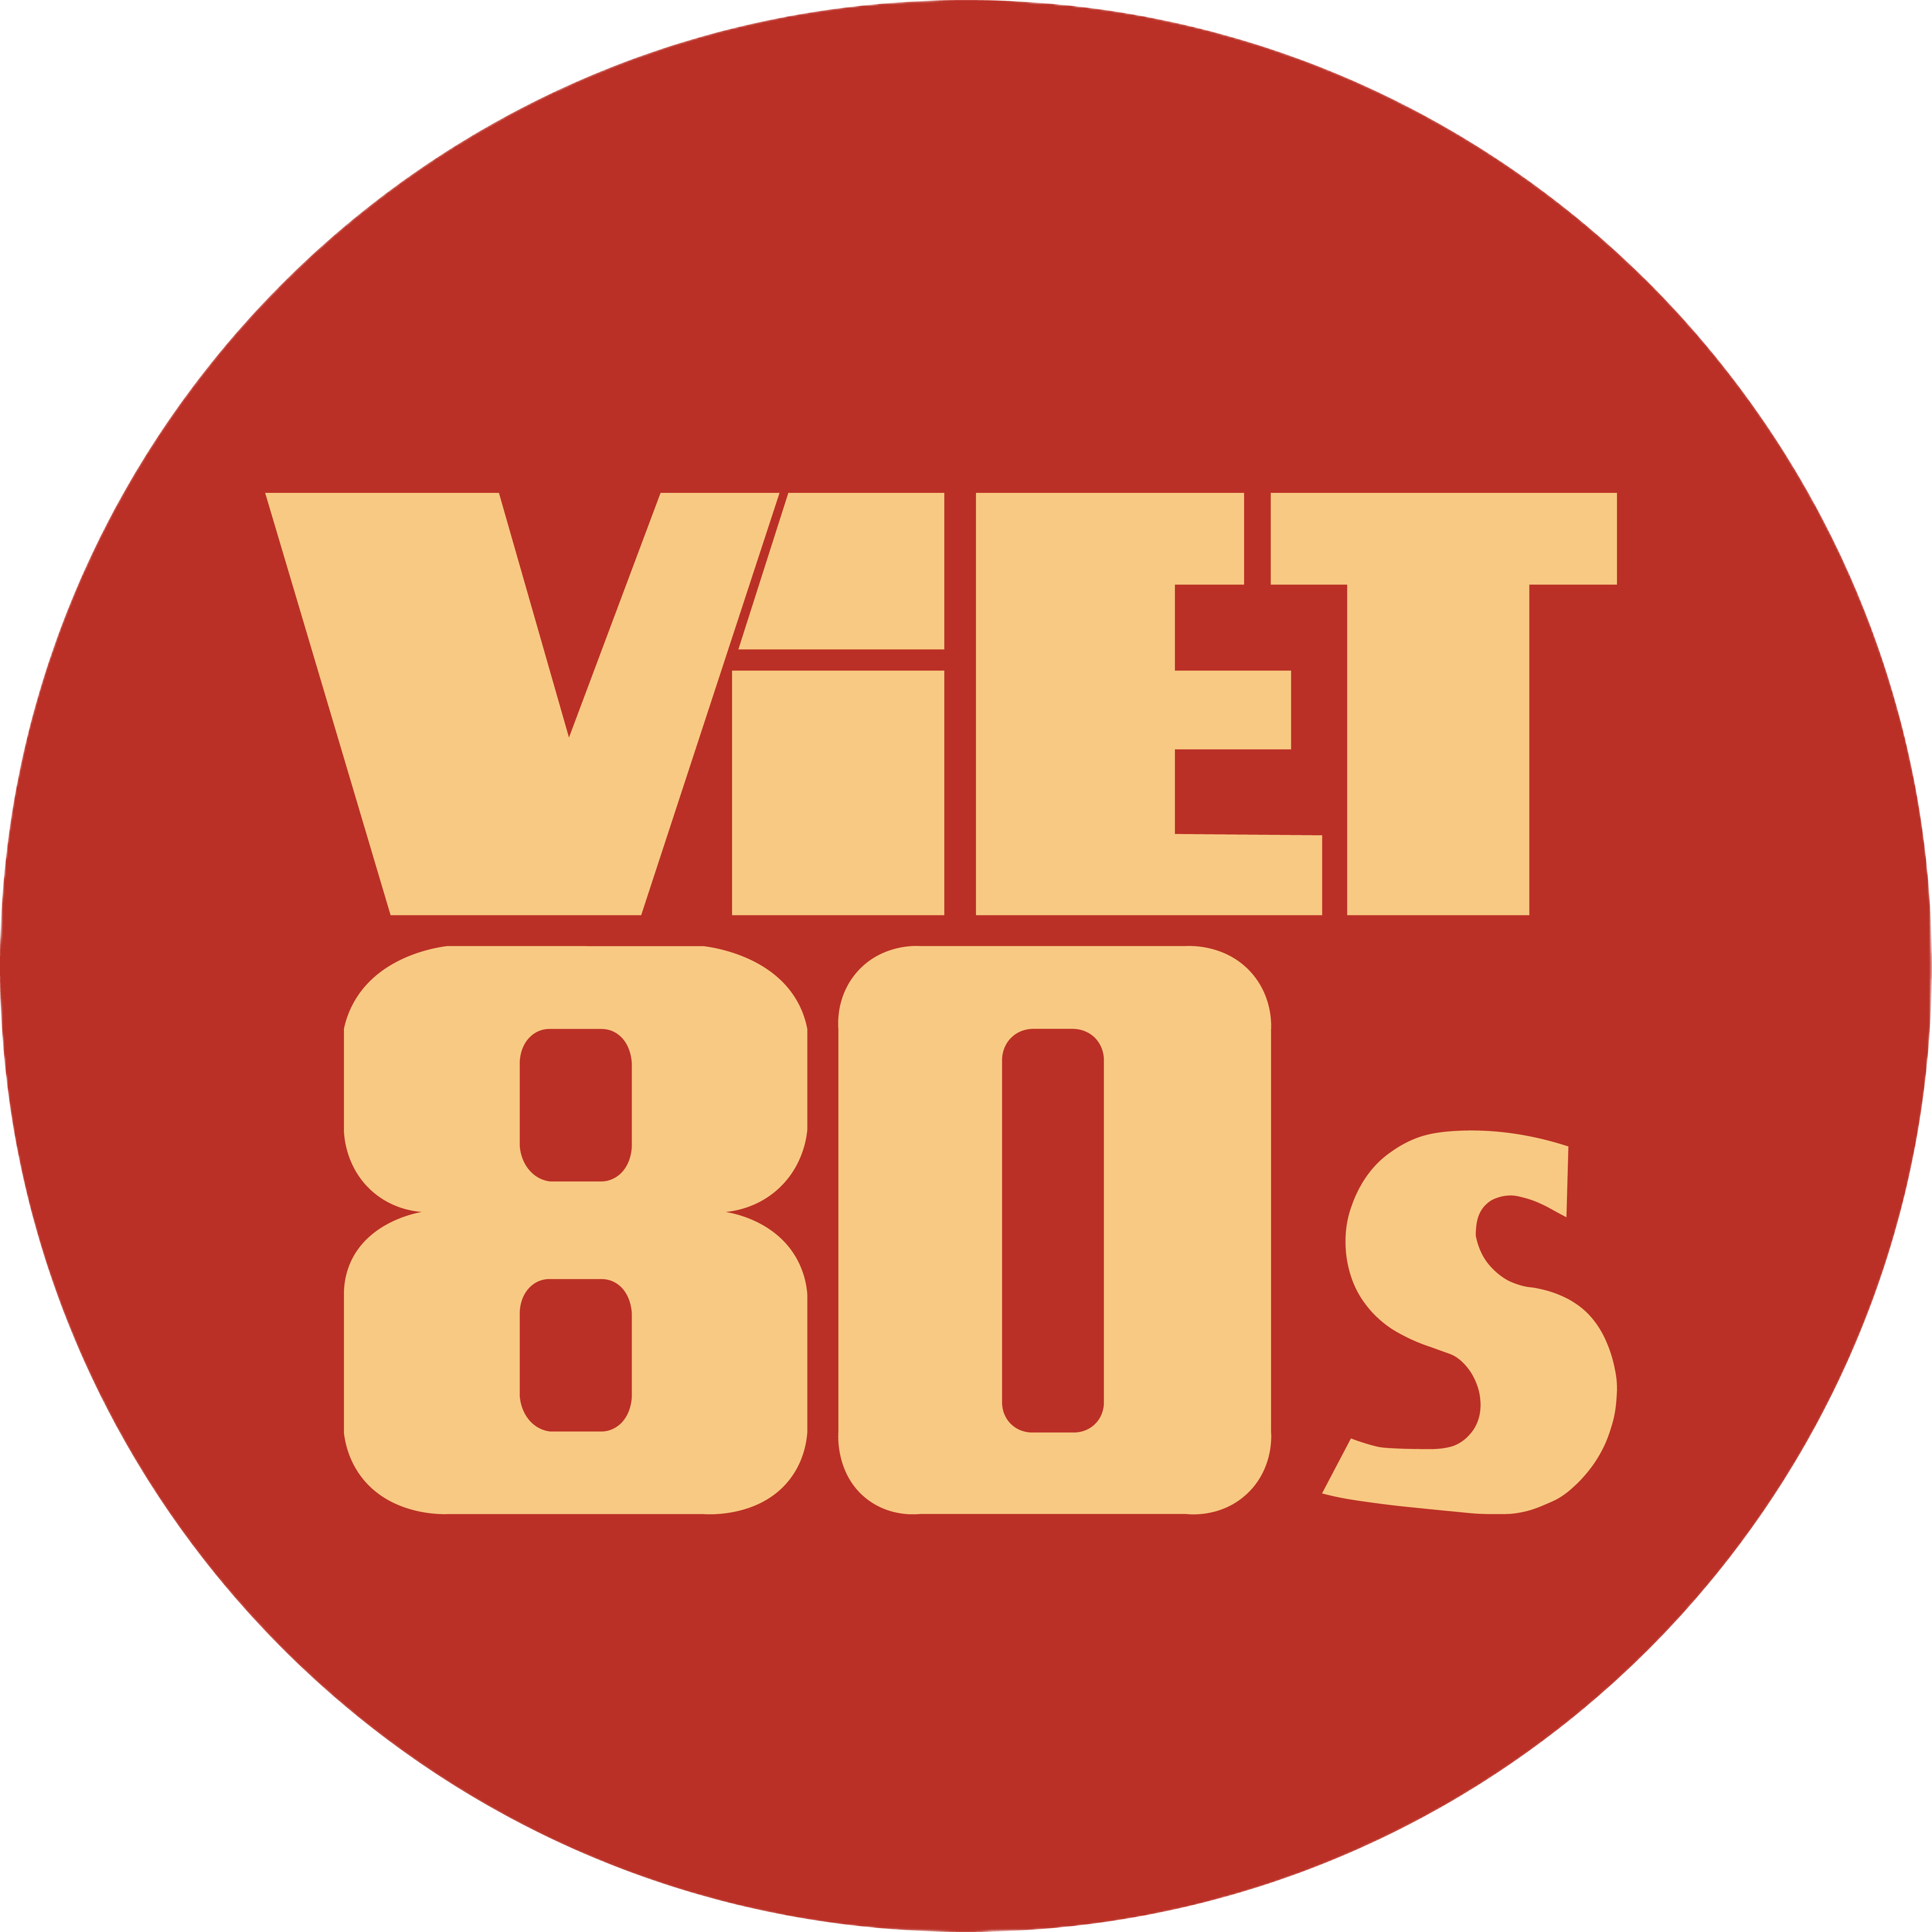 Viet80s Logo